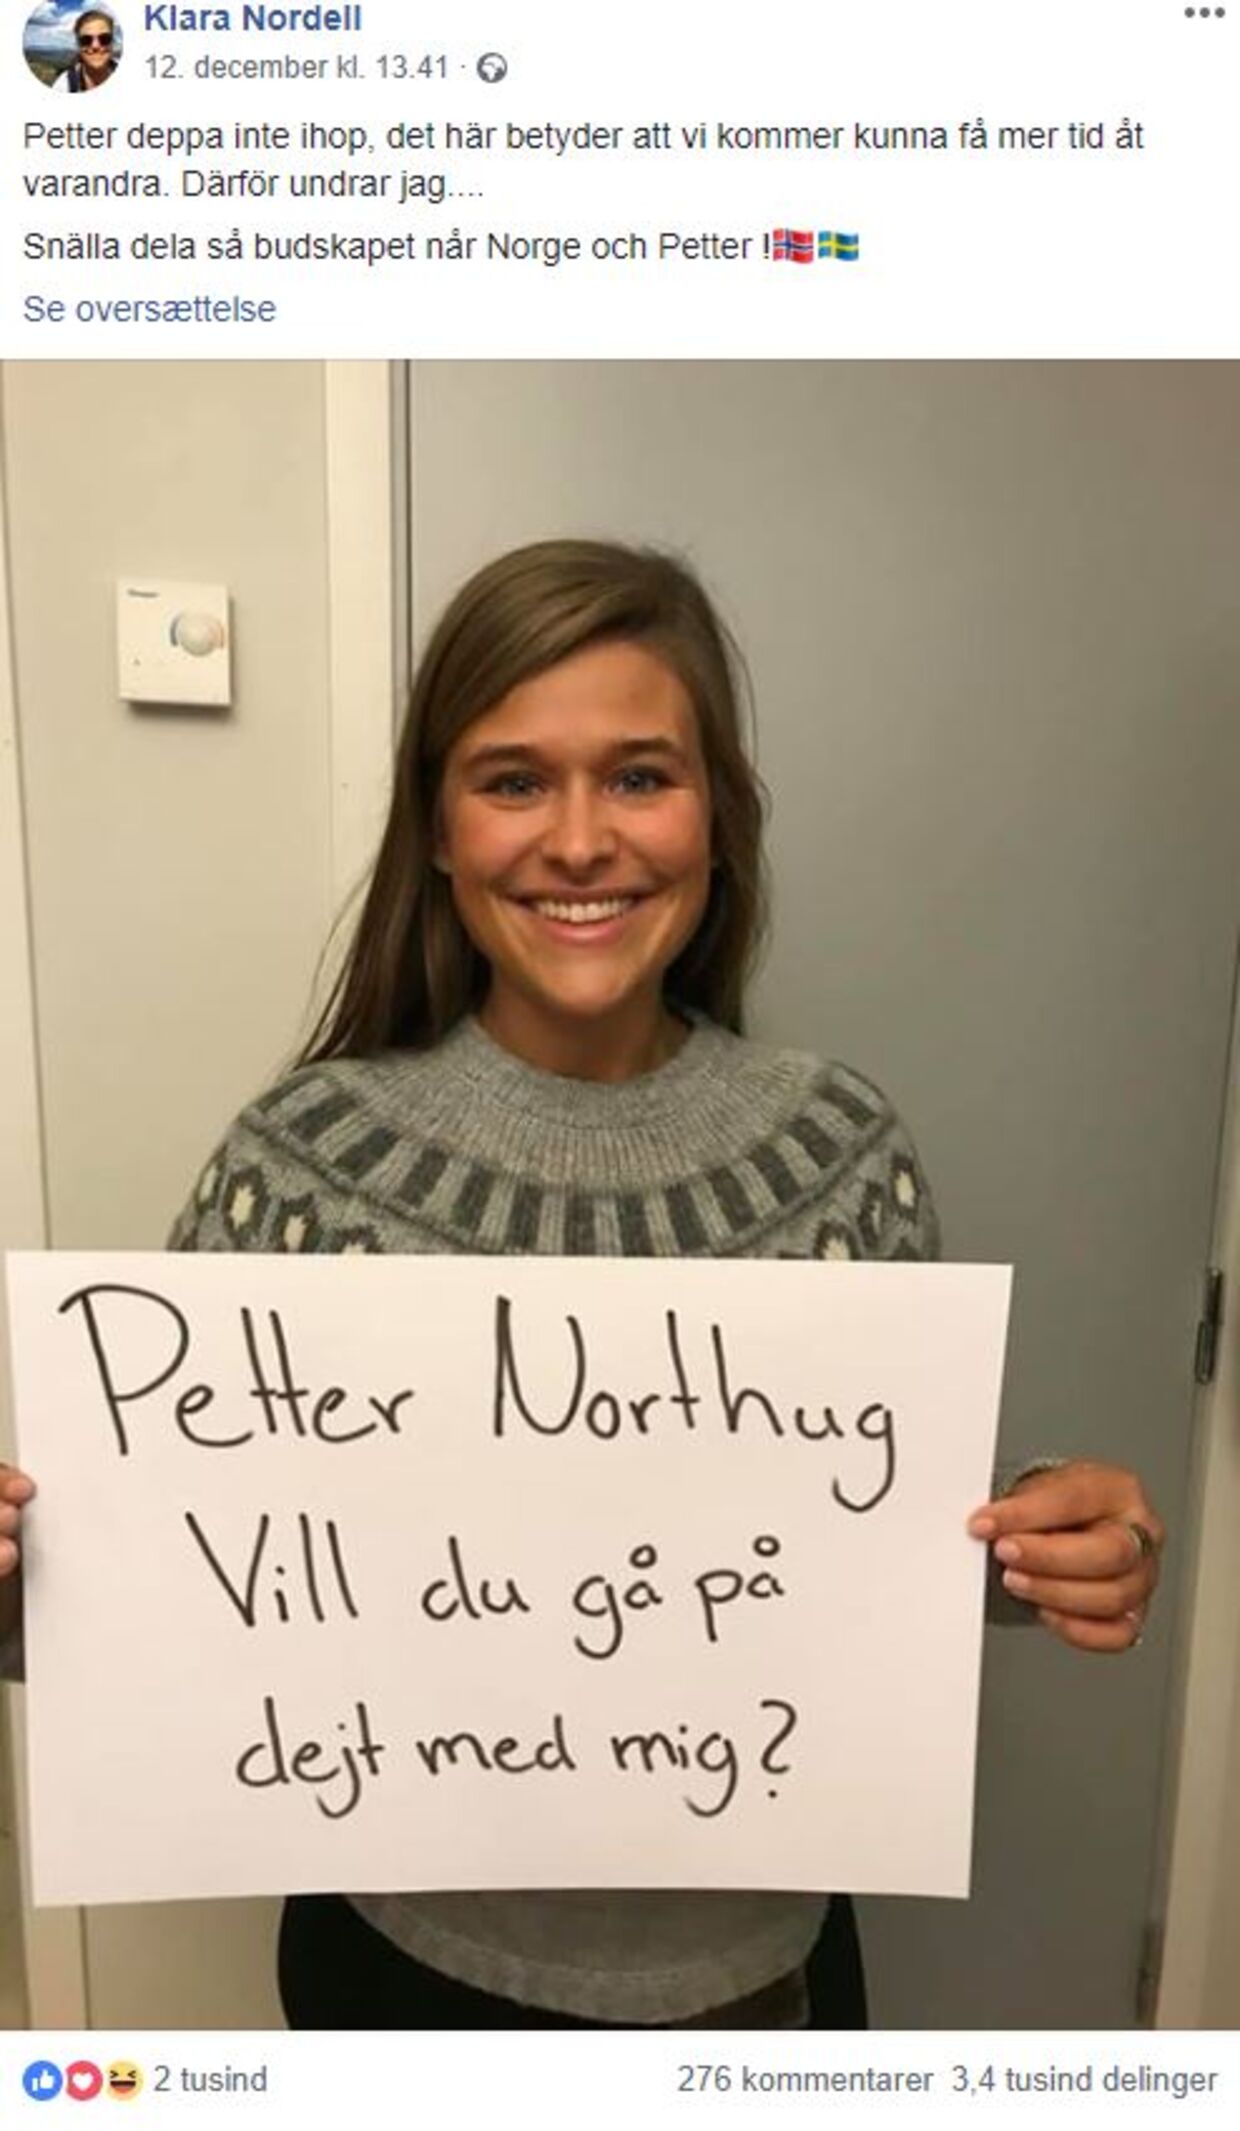 Petter Northug svar efter bilden på Klara Nordell, 26